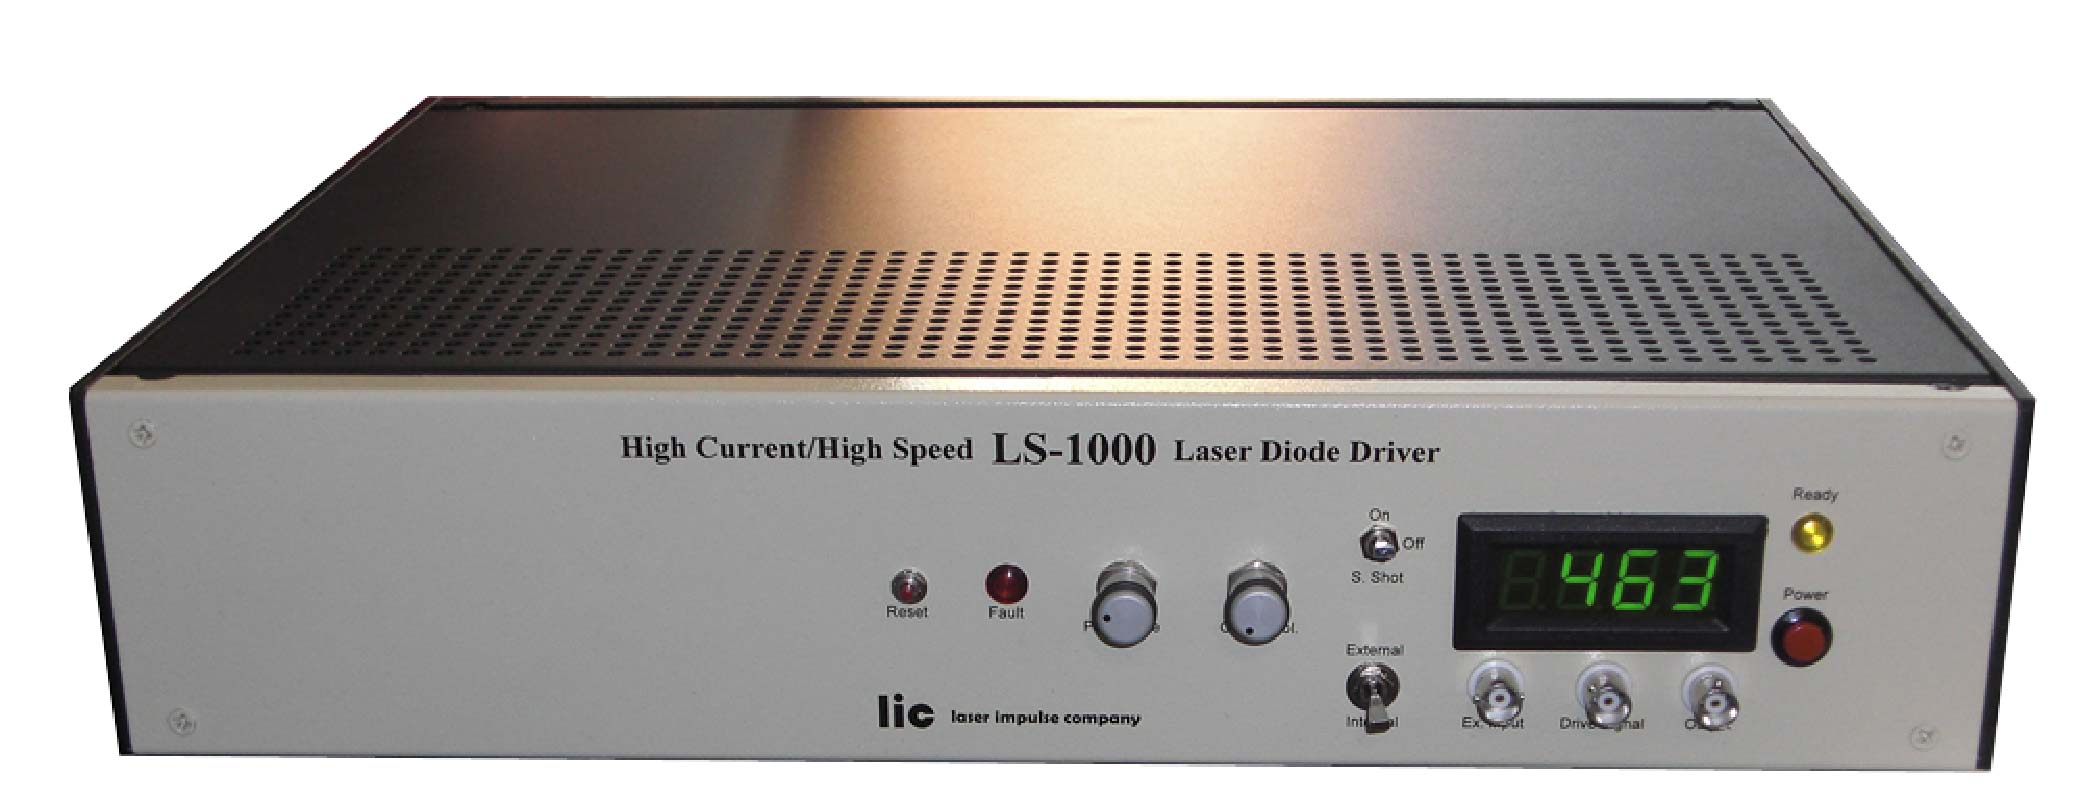 Ultra High Speed Pulser & Pulse Generator – LS-1000